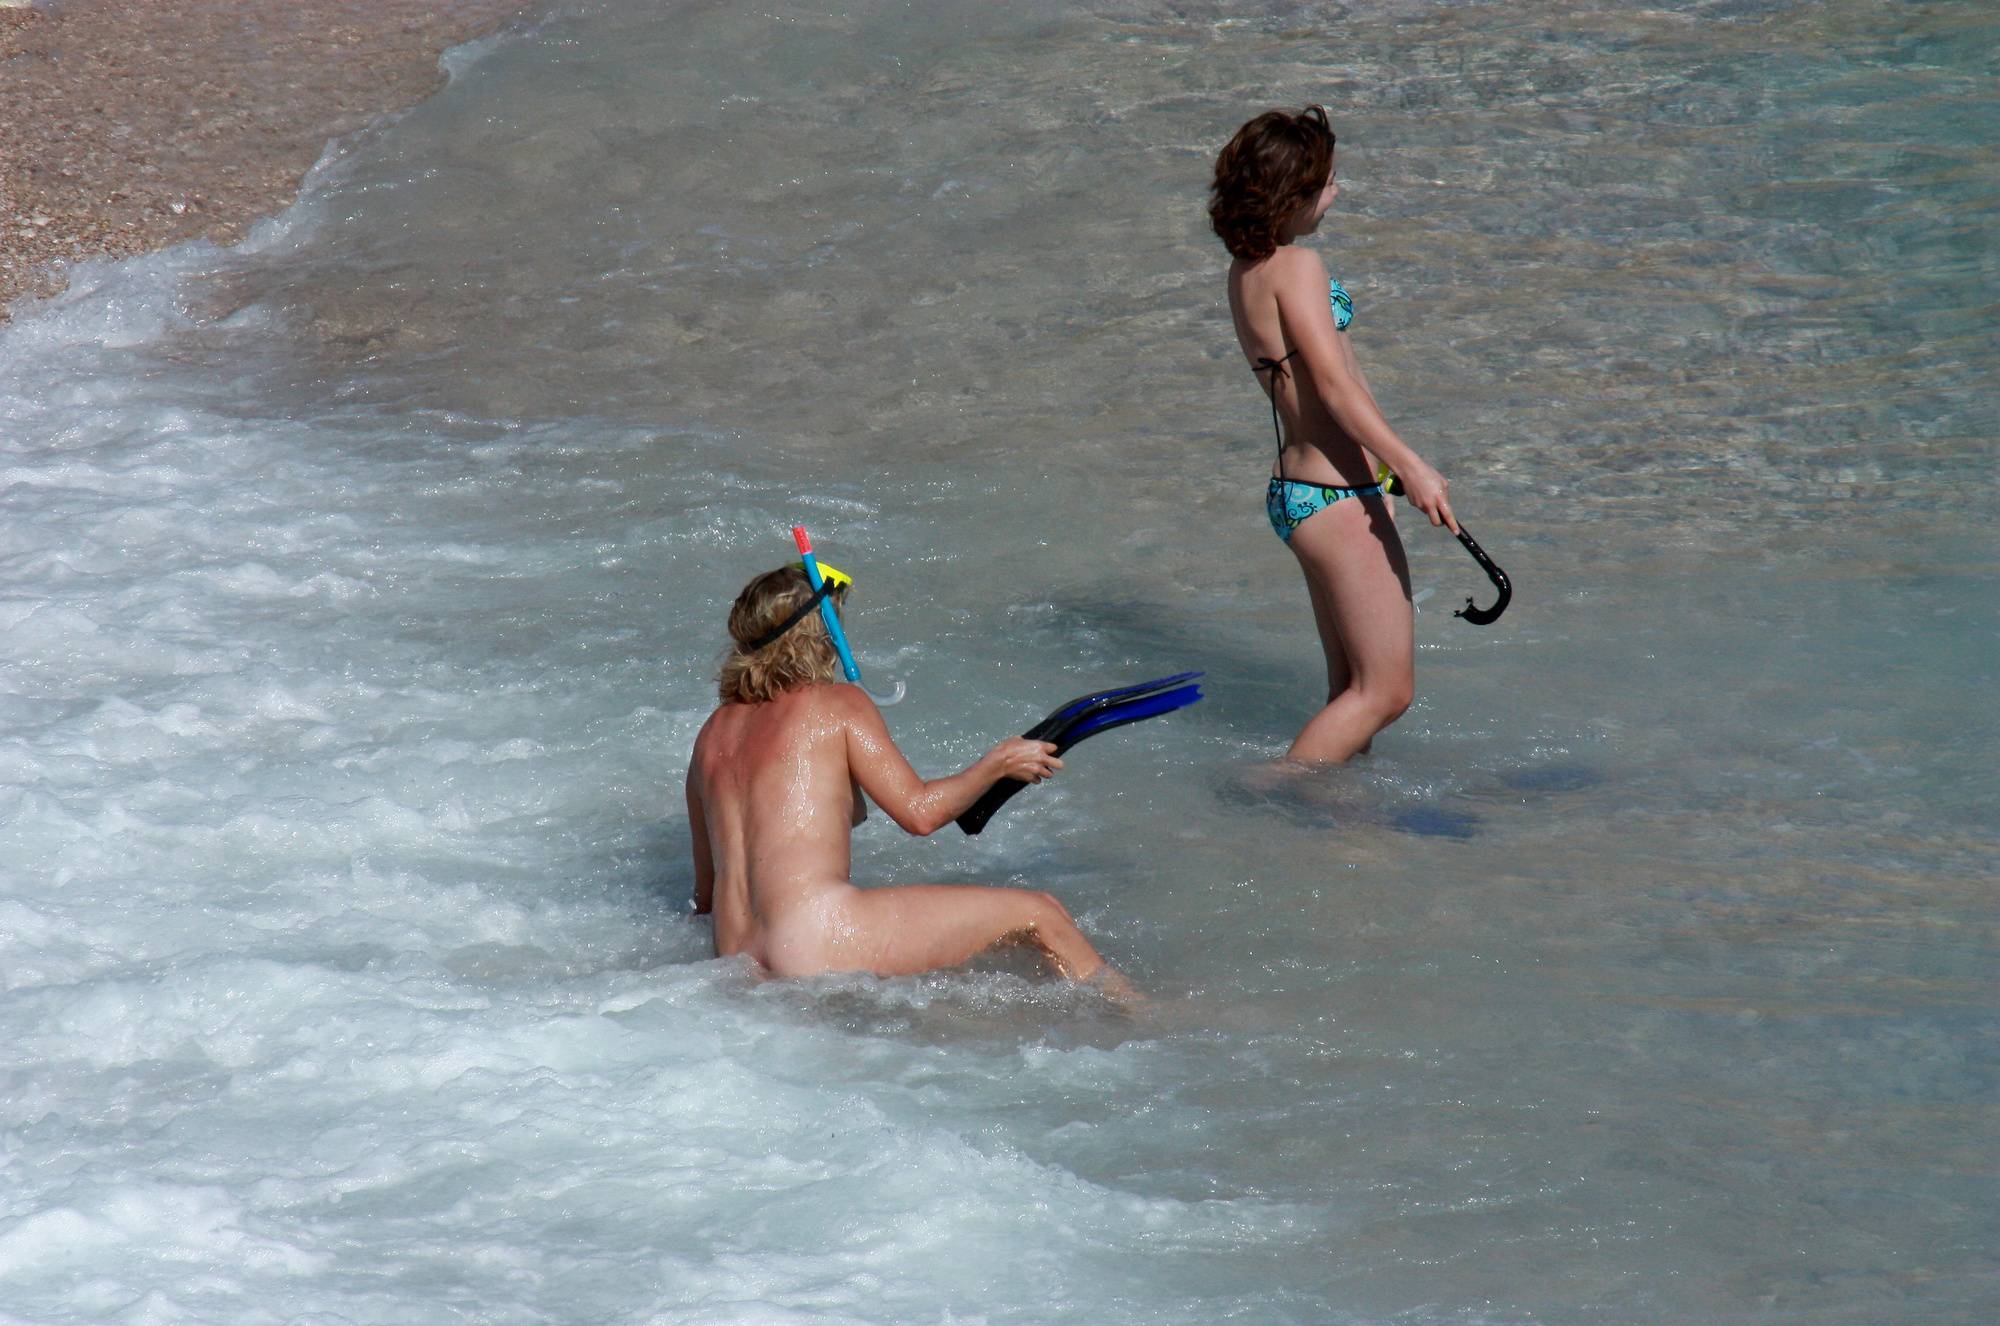 Nudist Pictures Nudist Snorkeling Shores - 2